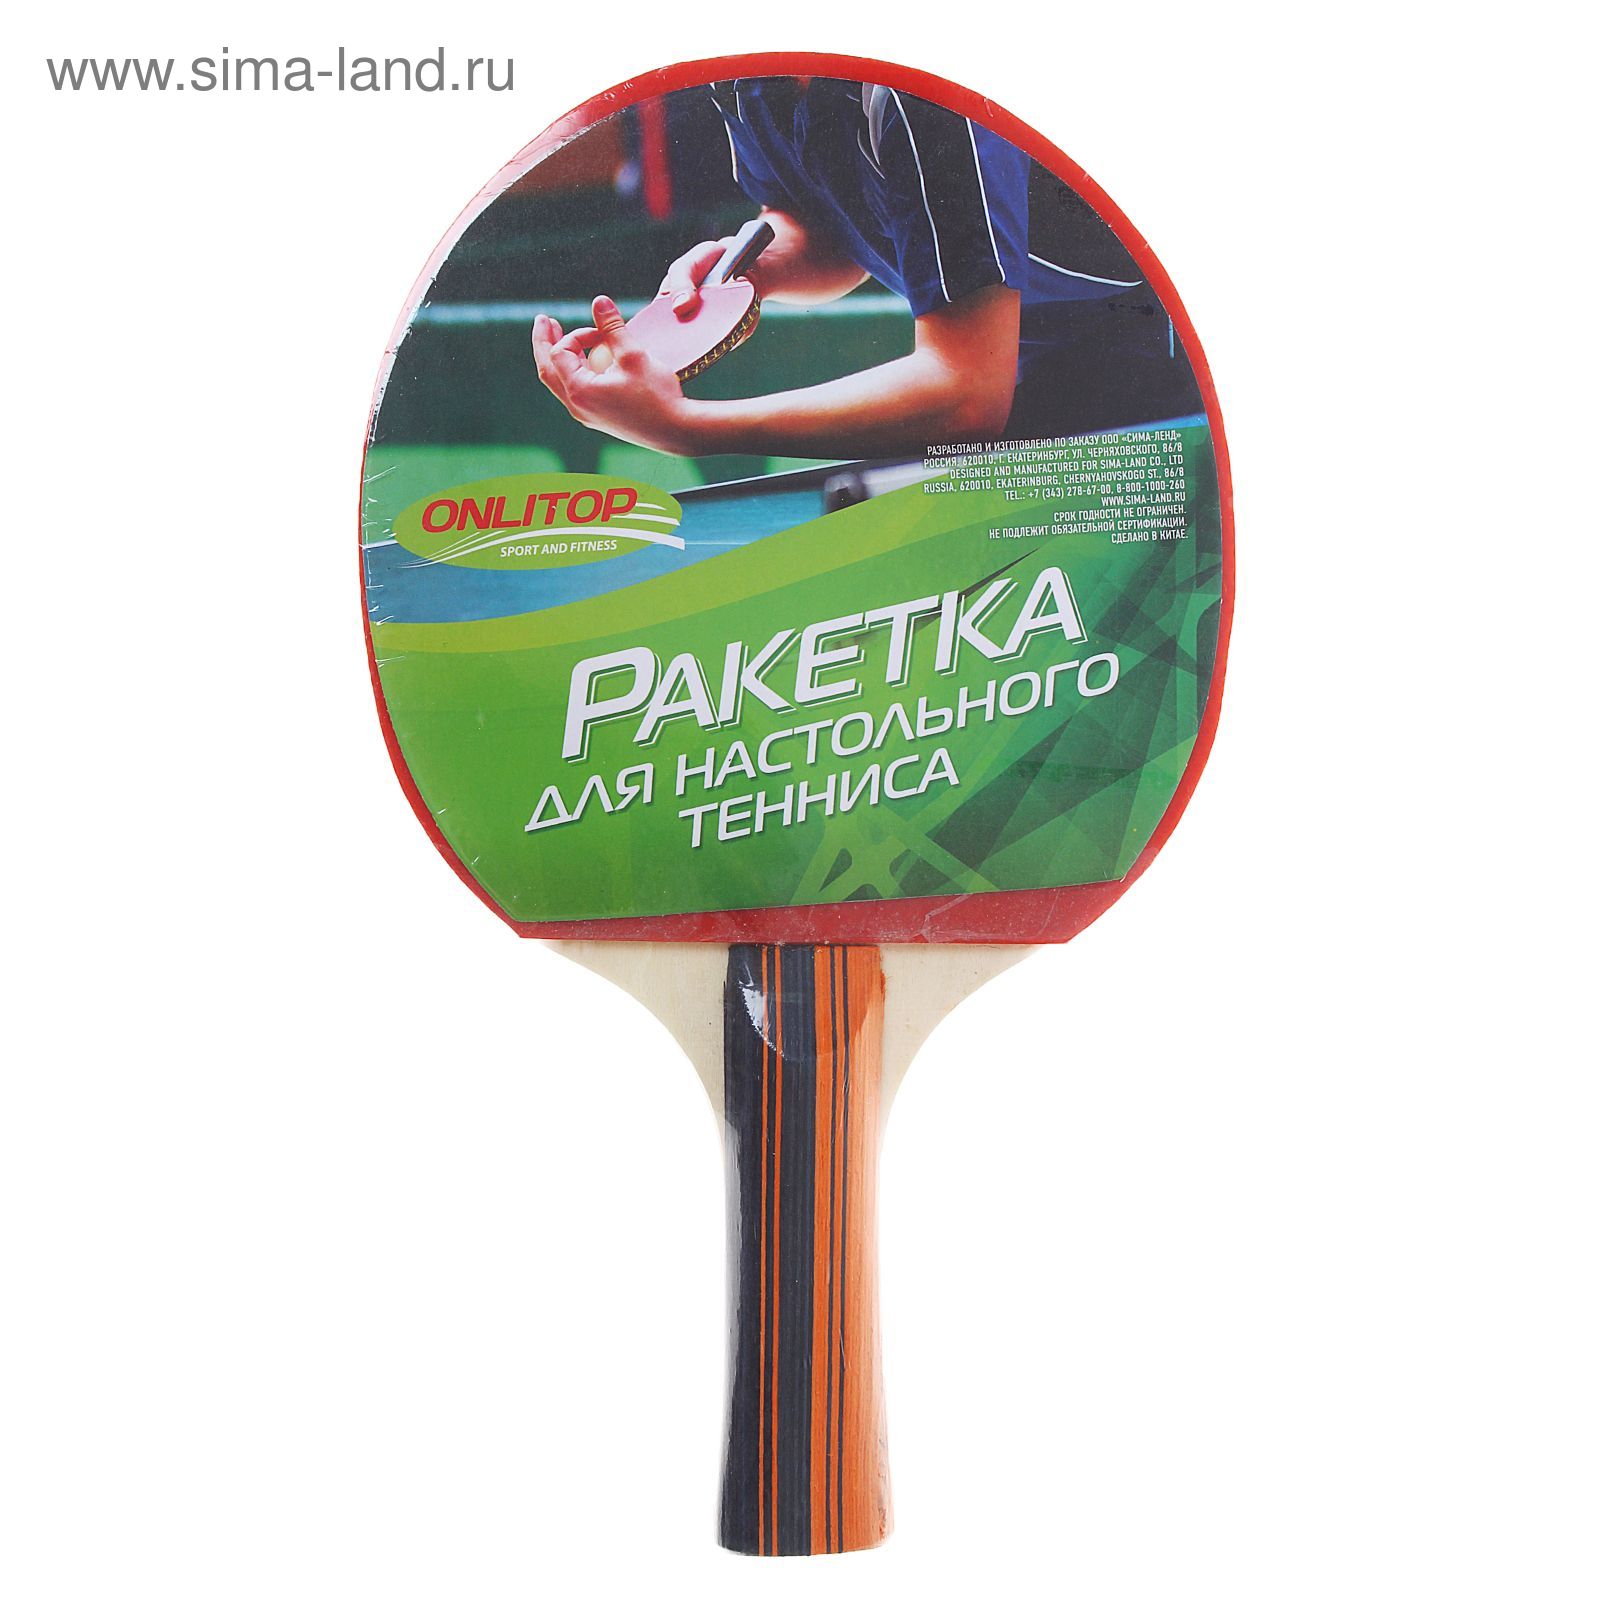 Ракетка для настольного тенниса GREEN , OТ-19 в чехле